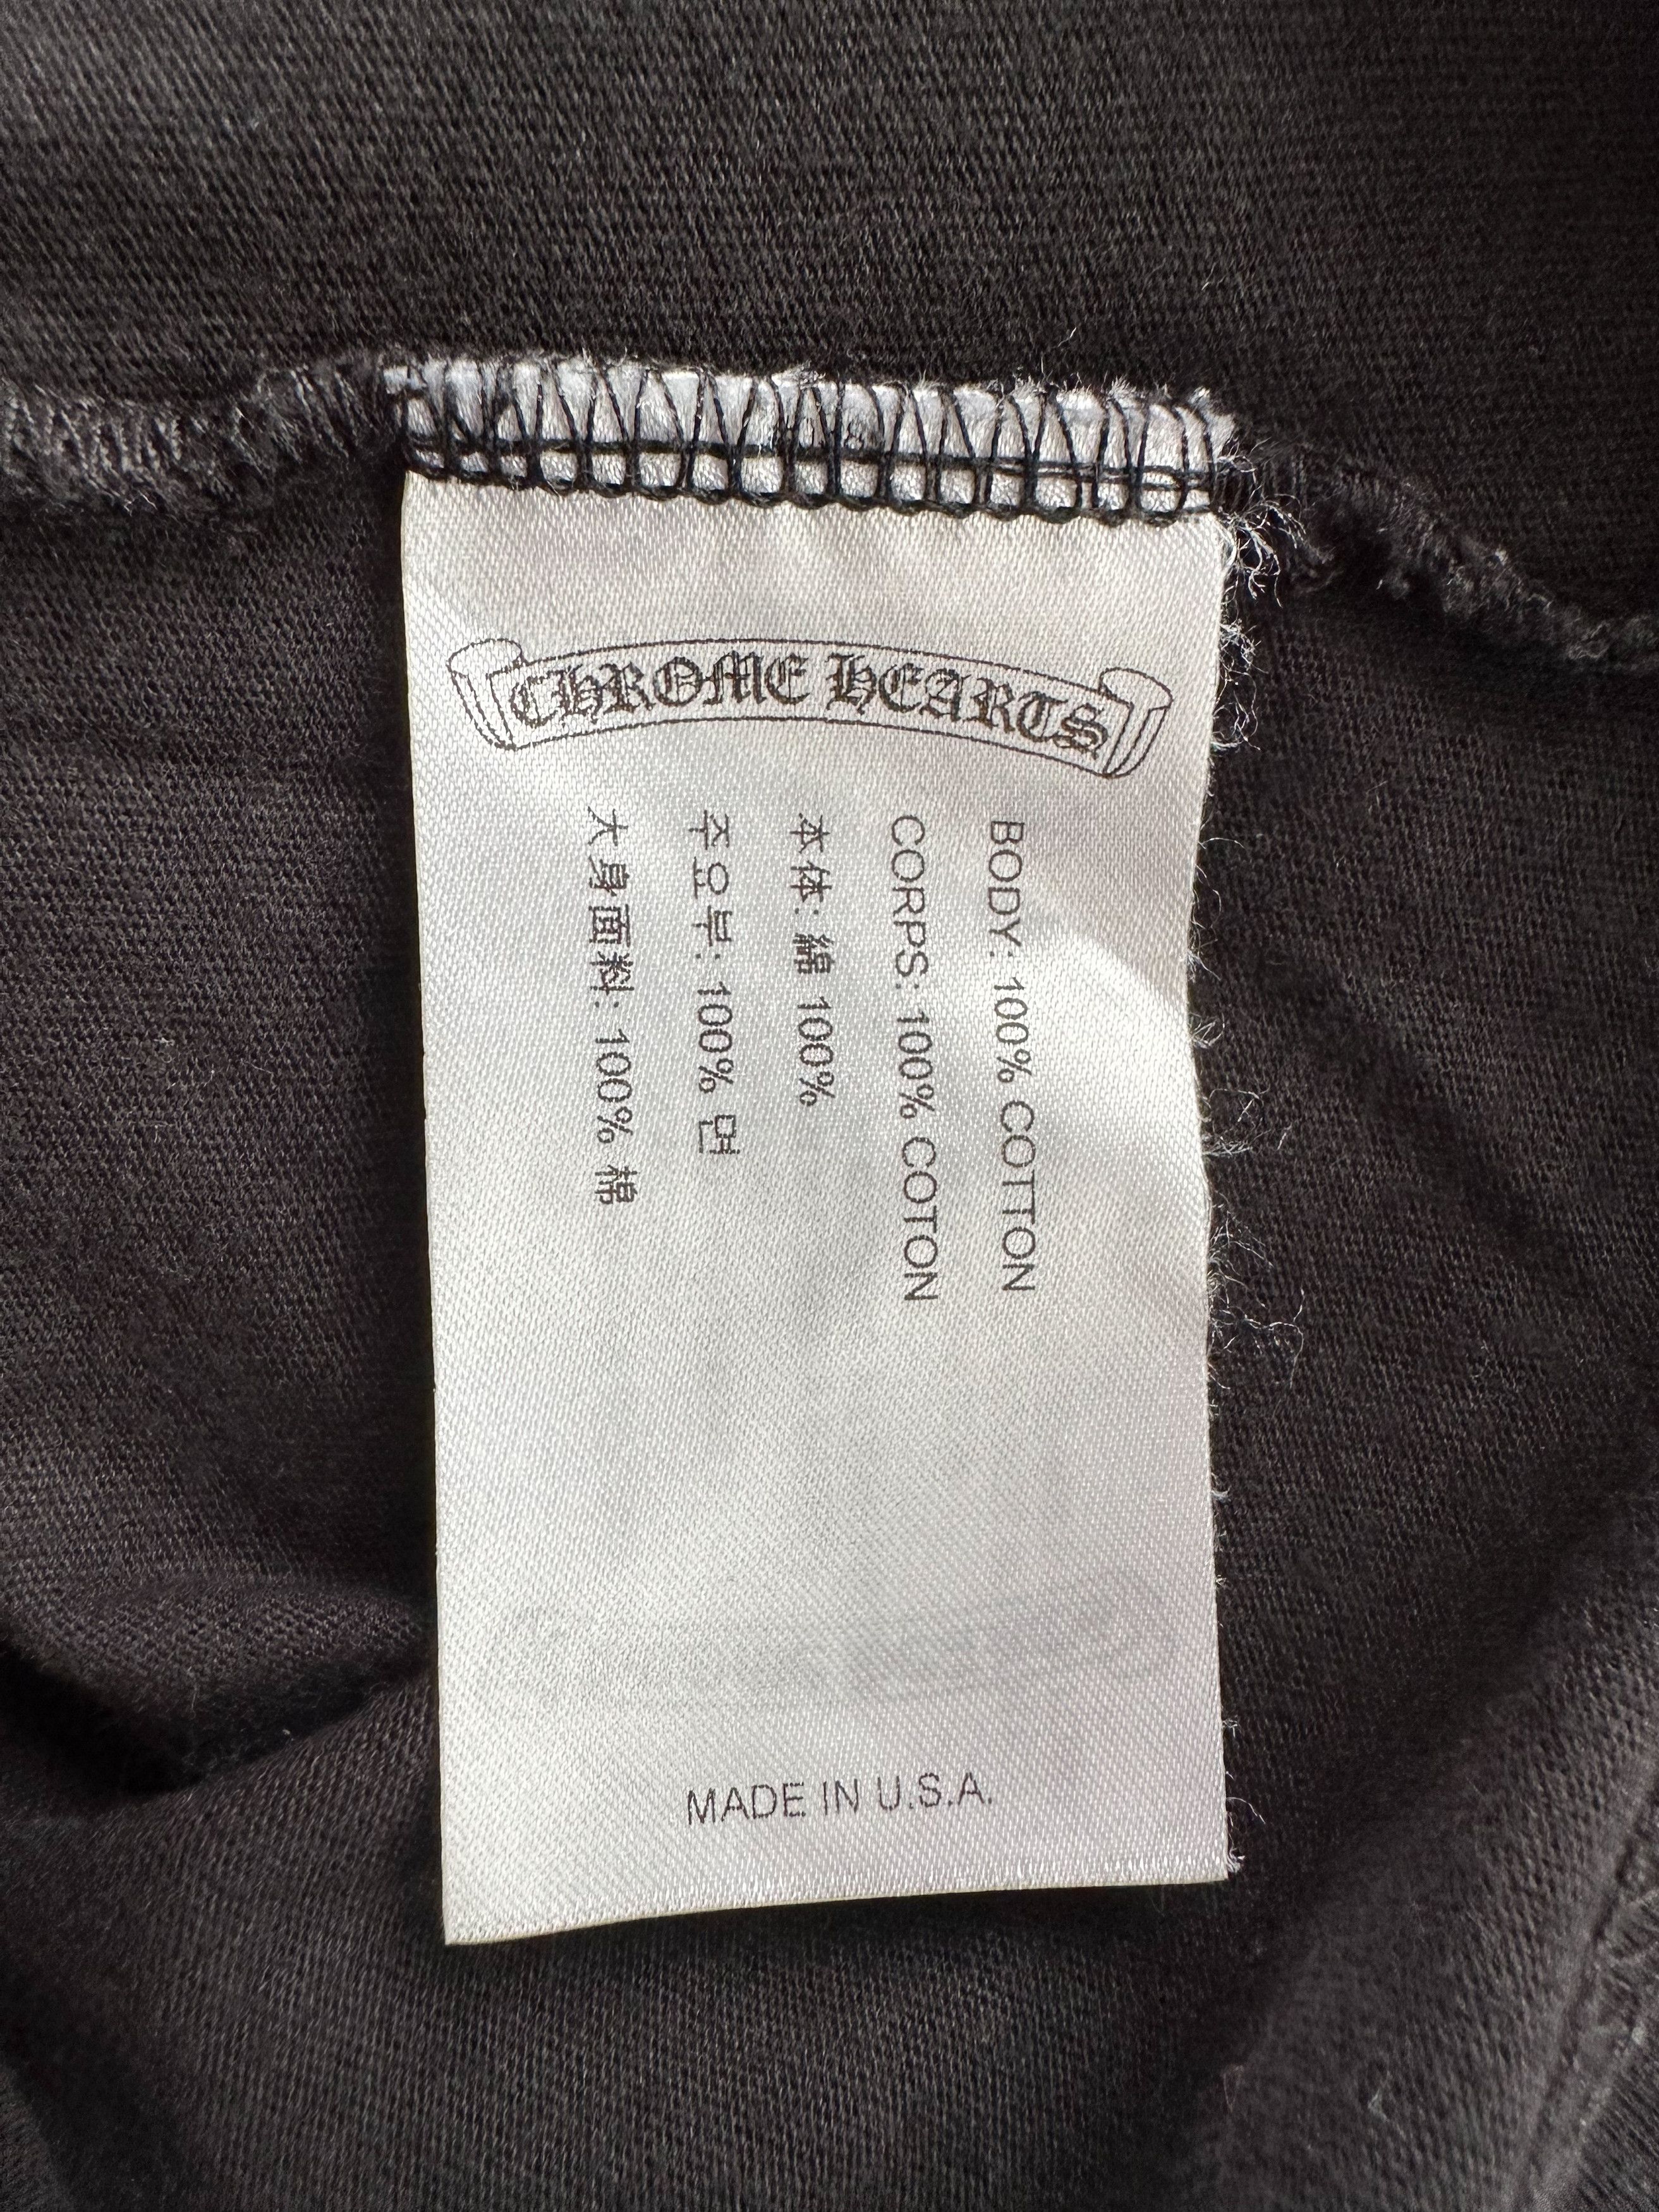 Chrome Hearts Chrome Hearts Black & White Foti T-Shirt Size US S / EU 44-46 / 1 - 5 Thumbnail